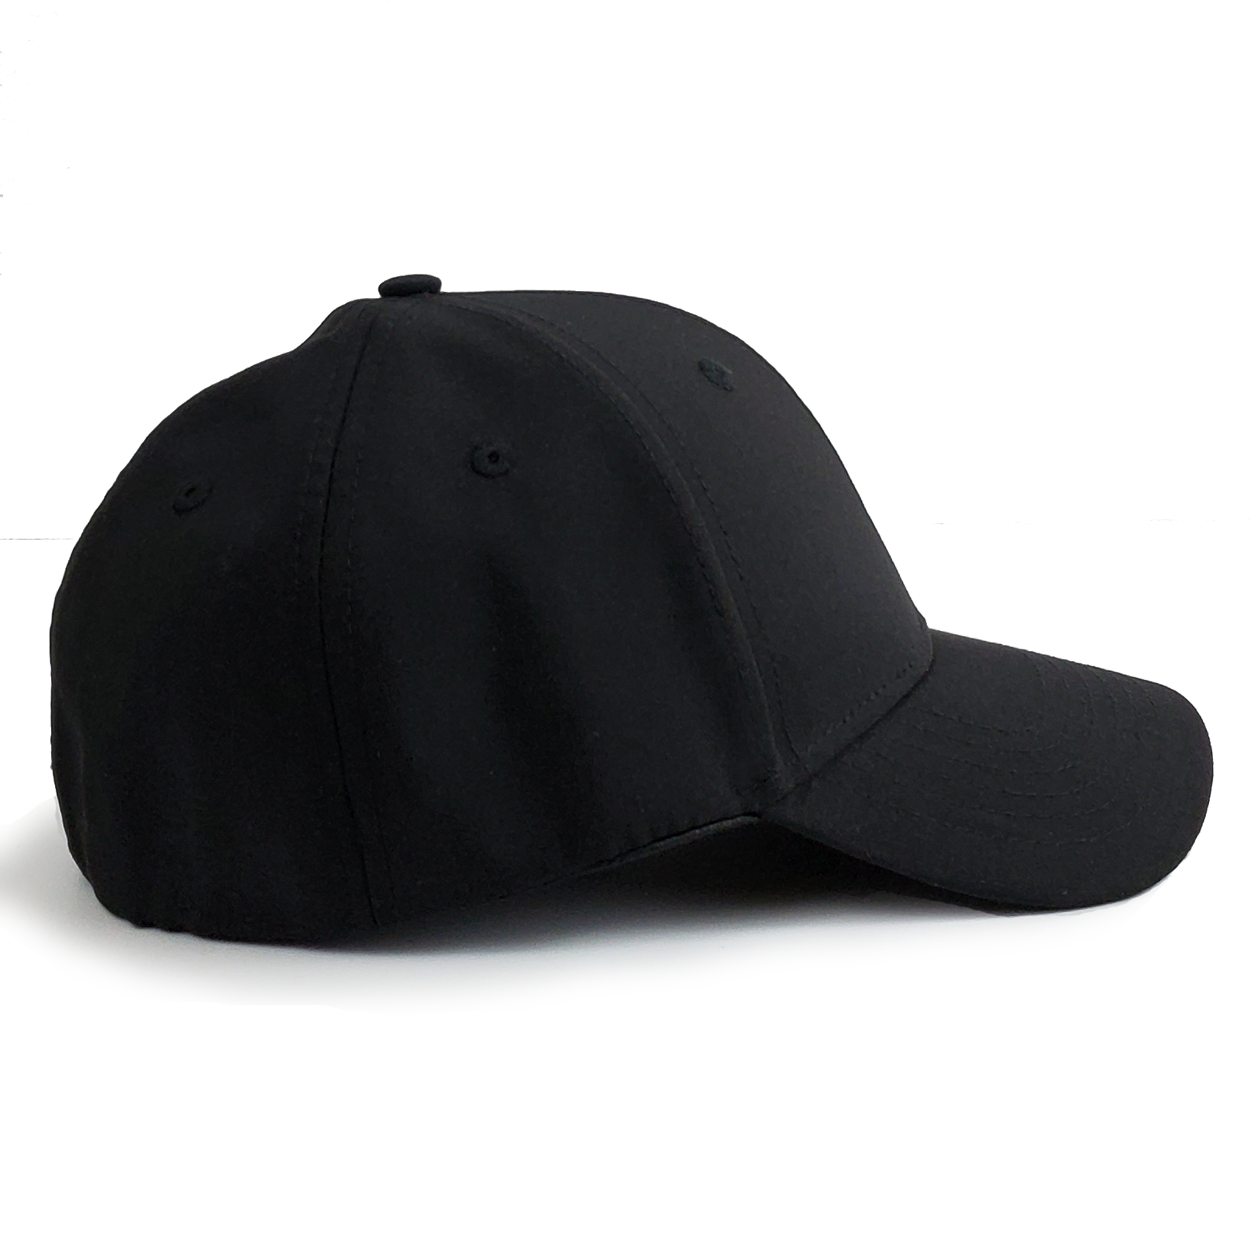 1PKT Black Stretch Fit Curved Bill Hat - 1PKT